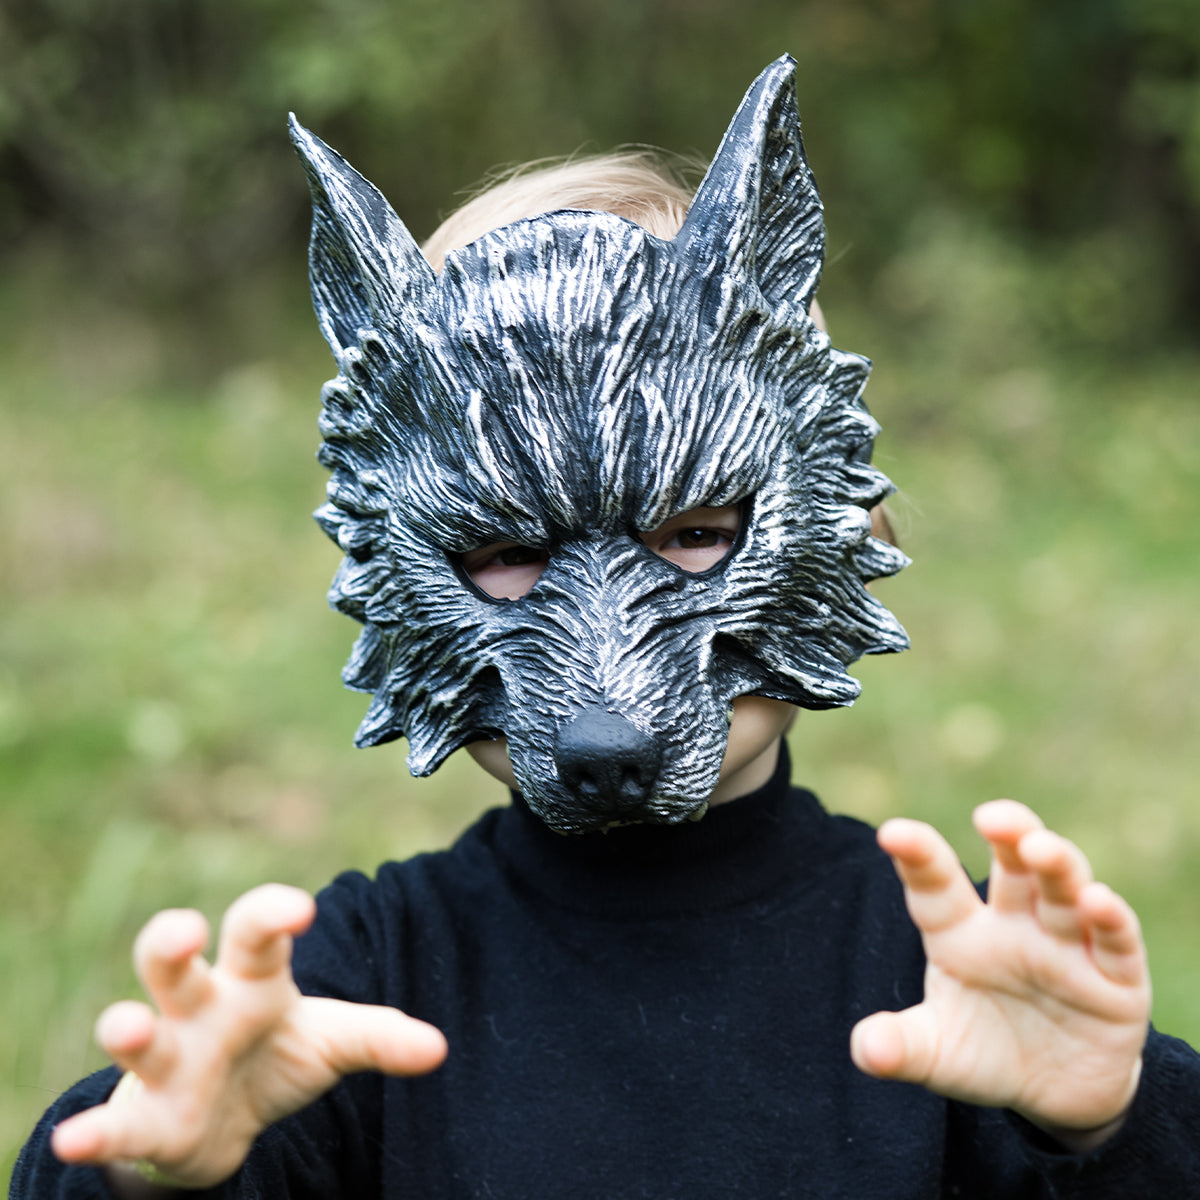 Laat je kleintje transformeren in een woeste weerwolf met dit toffe weerwolf masker van het merk Great Pretenders. Dit indrukwekkende masker is perfect voor kinderen die graag opgaan in fantasierijk spel of fan zijn van stoere weerwolven. Want wat is er leuker dan zelf in de huid van een wolf kruipen? VanZus